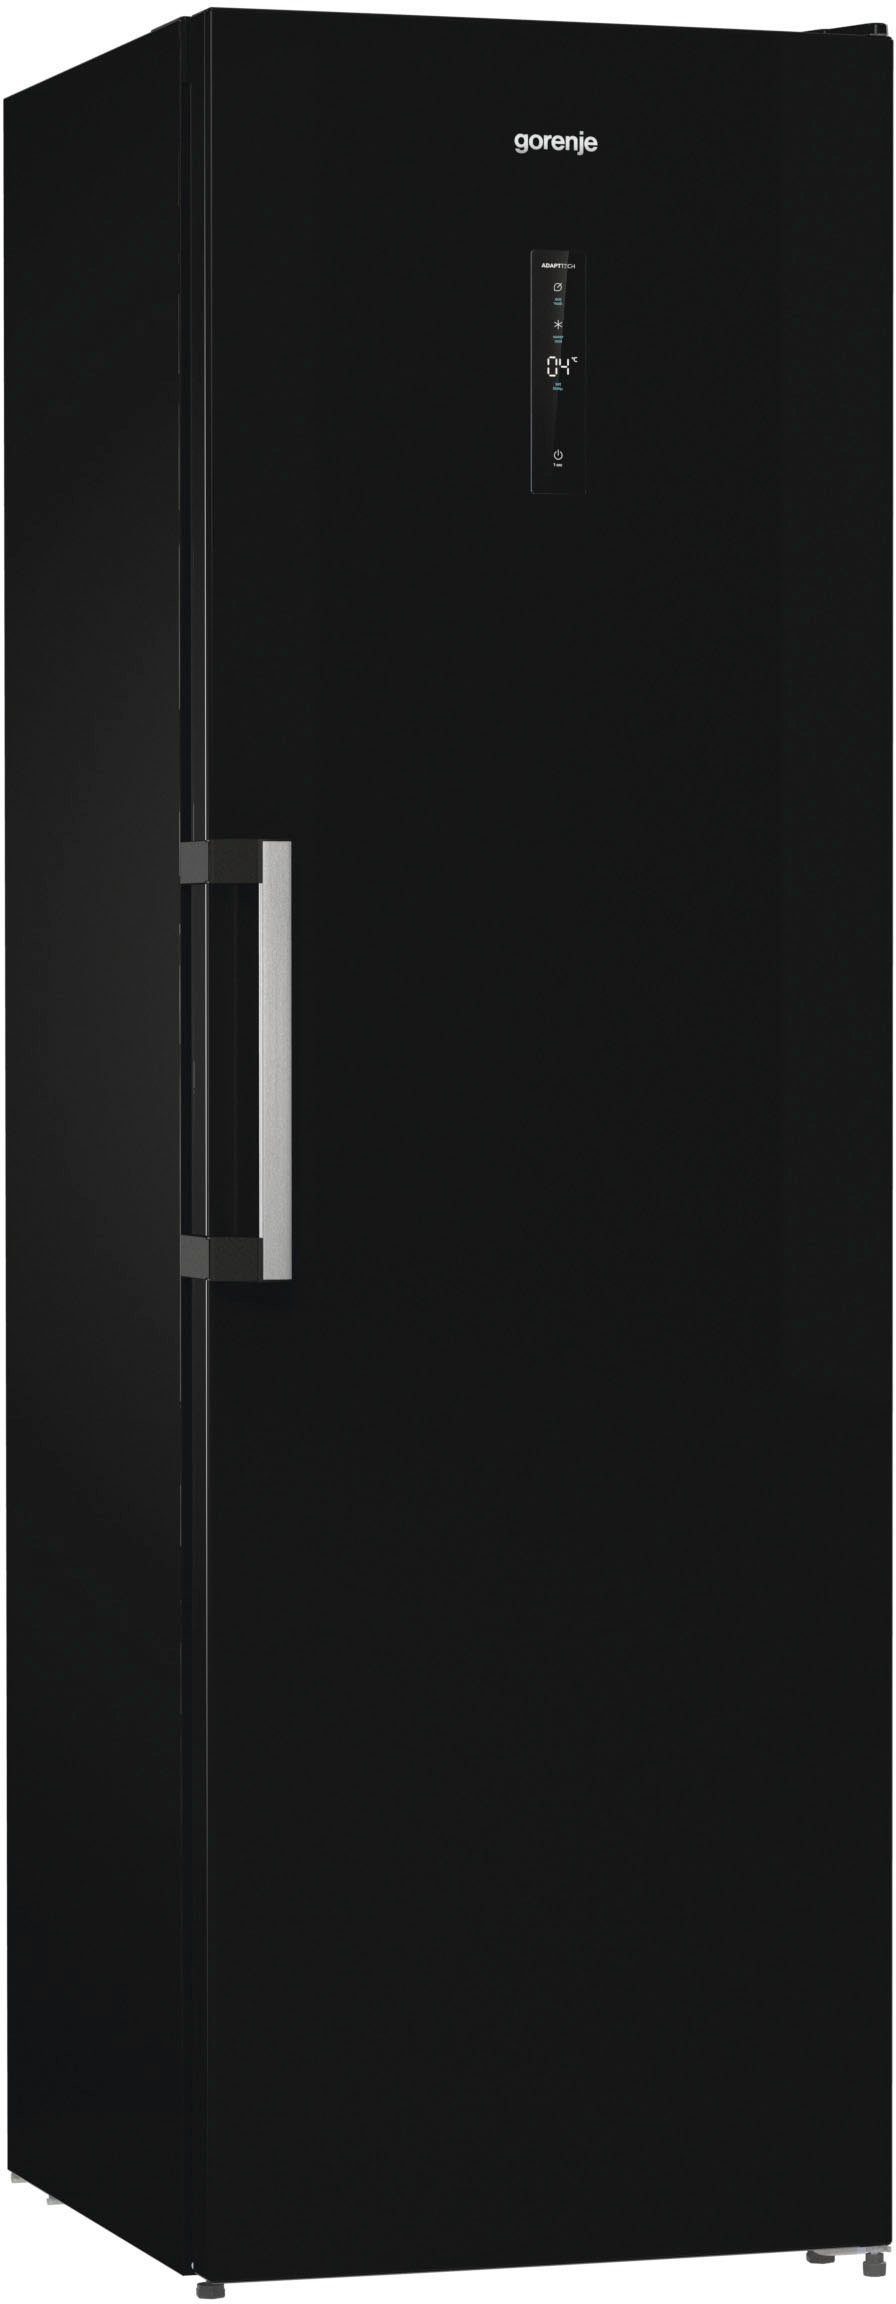 GORENJE Kühlschrank R619DABK6, 185 cm hoch, 59,5 cm breit schwarz